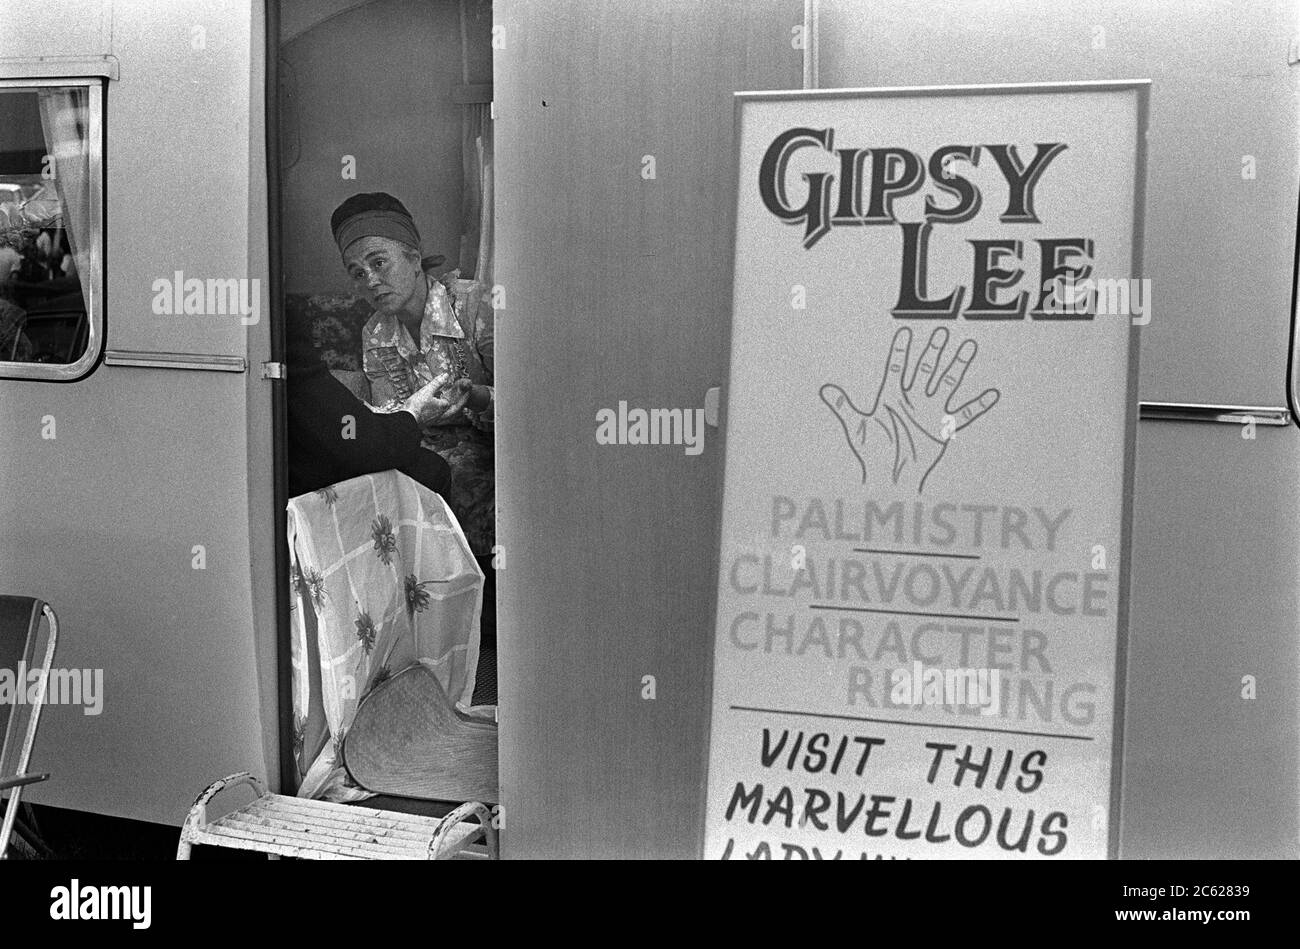 Gipsy Fortune Teller 70er Jahre Großbritannien. Gipsy Lee liest die Handfläche eines Kunden. Palmistry, Hellsehen und Charakterlesungen. Beim Derby Day Pferderennen treffen. On the Hill, Epsom Downs, Surrey 1974. UK HOMER SYKES Stockfoto